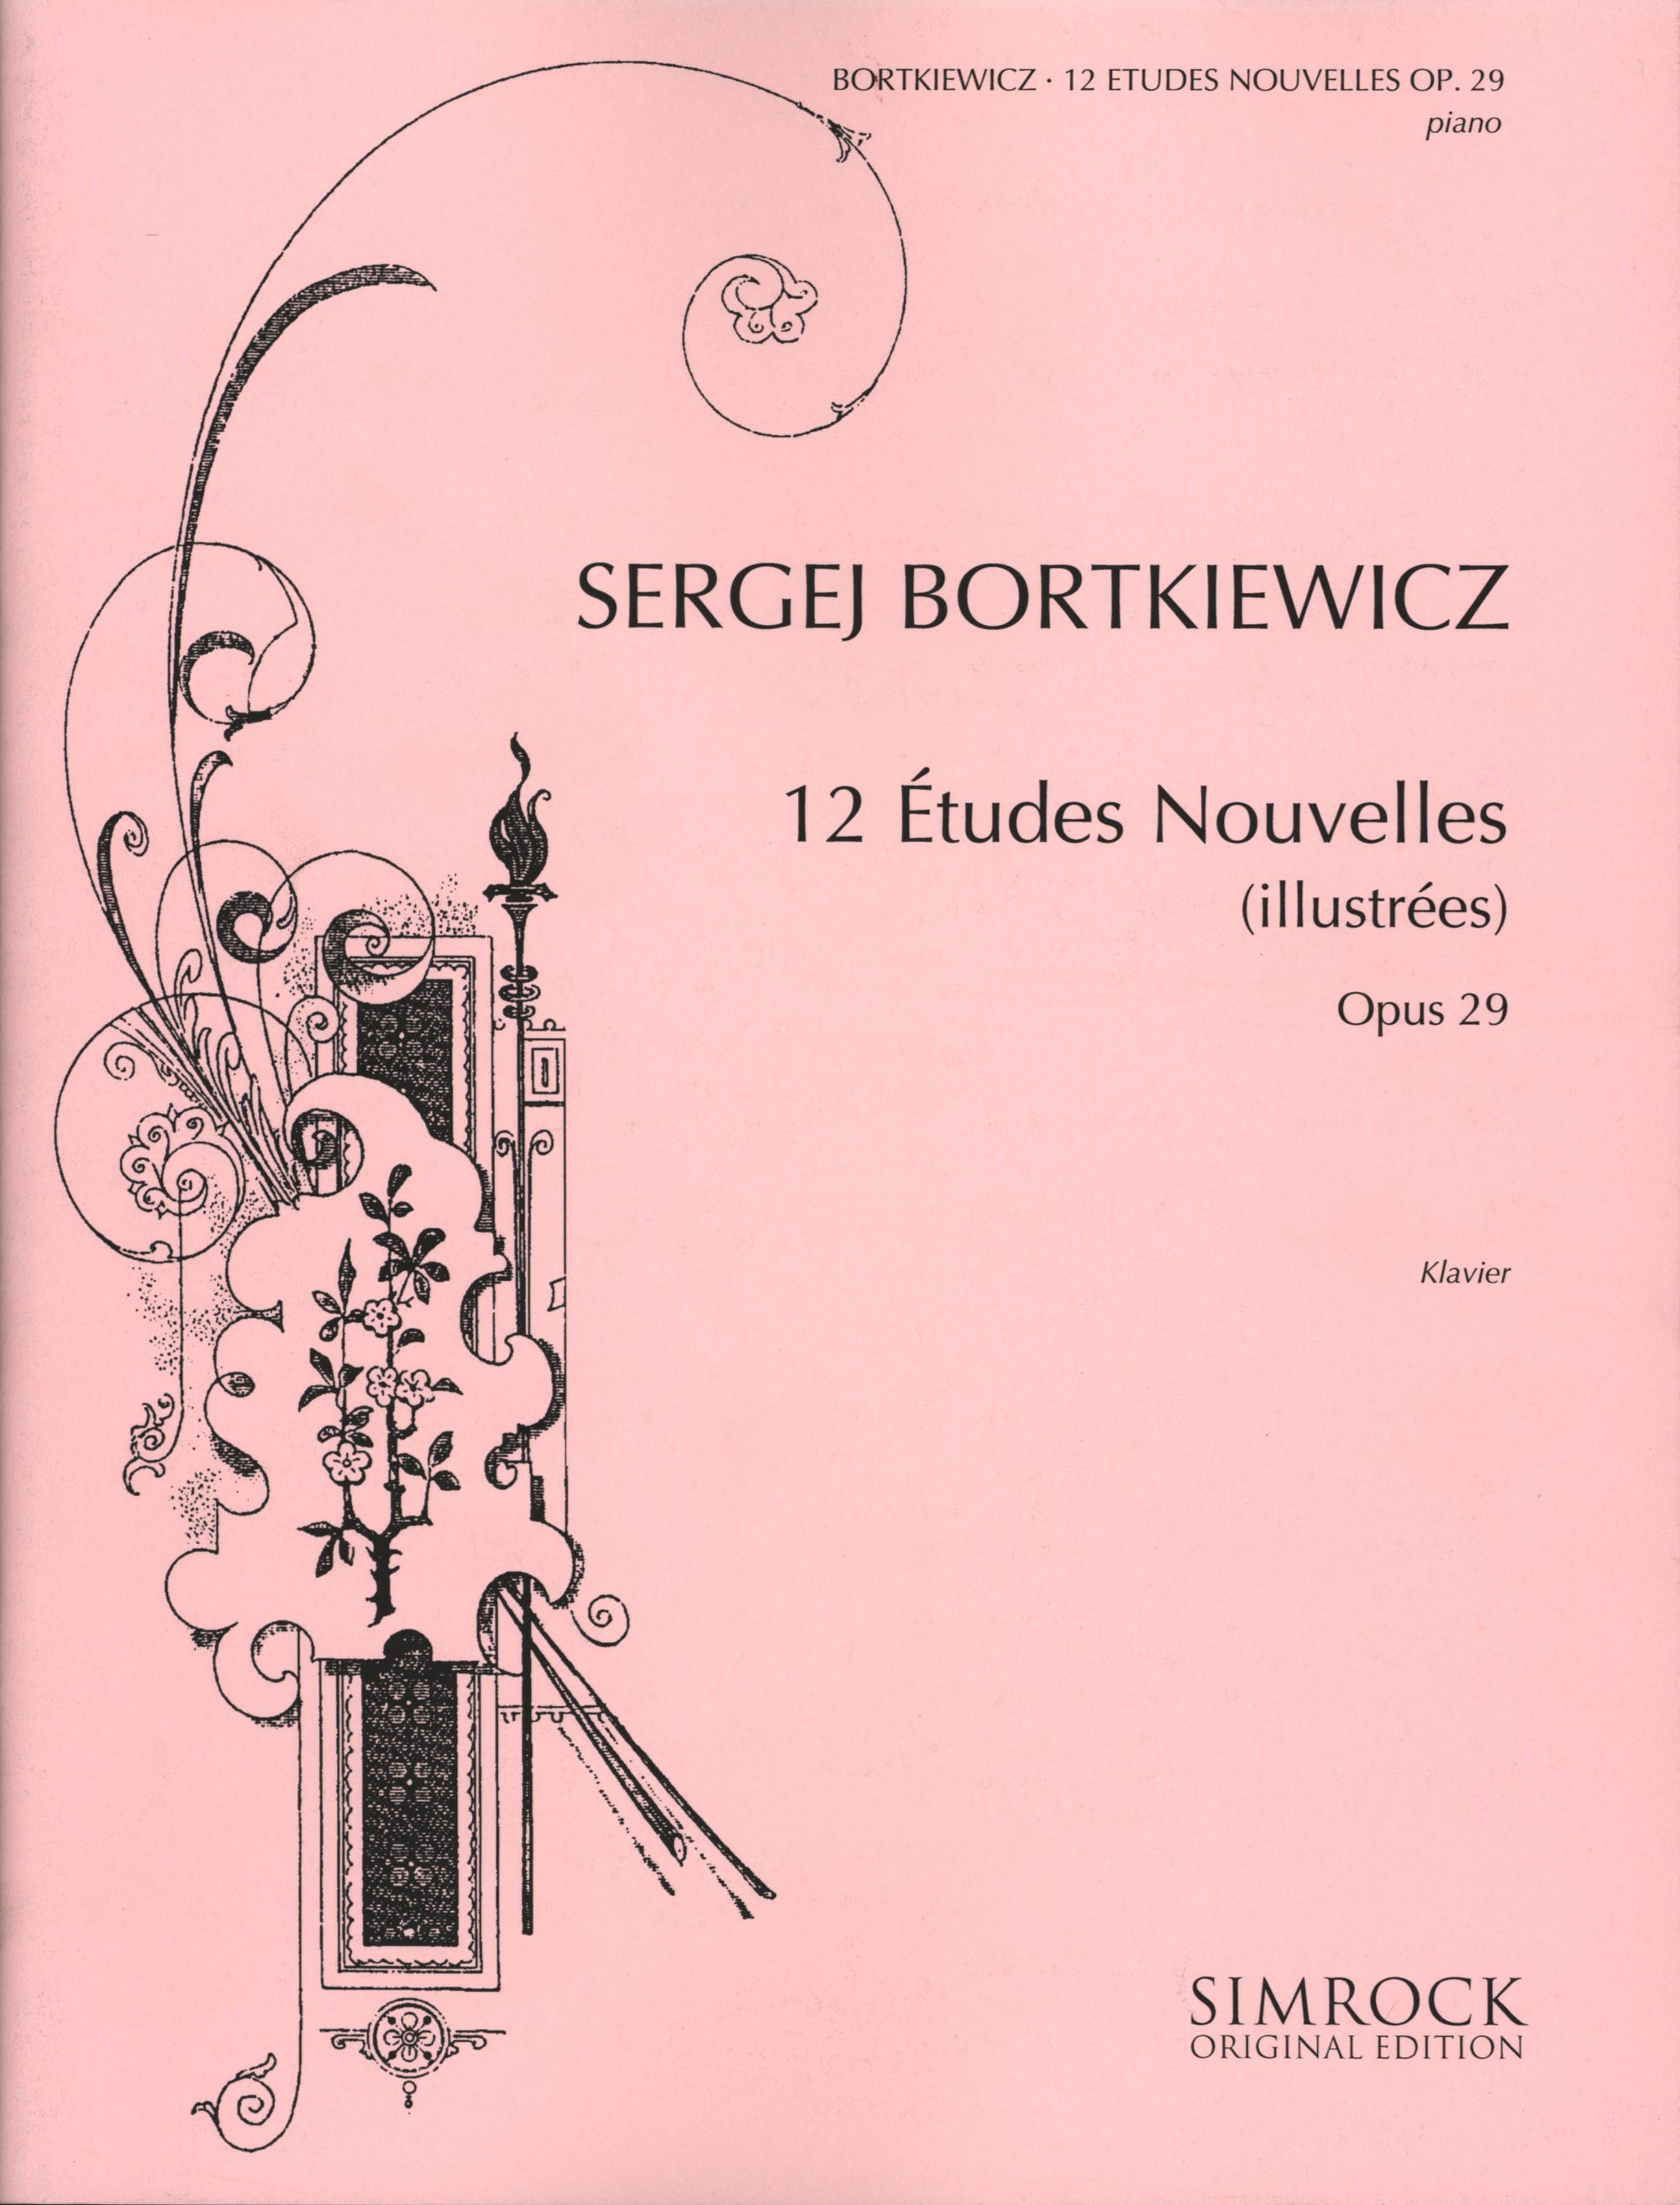 Bortkiewicz: 12 Études Nouvelles, Op. 29 (illustrées)